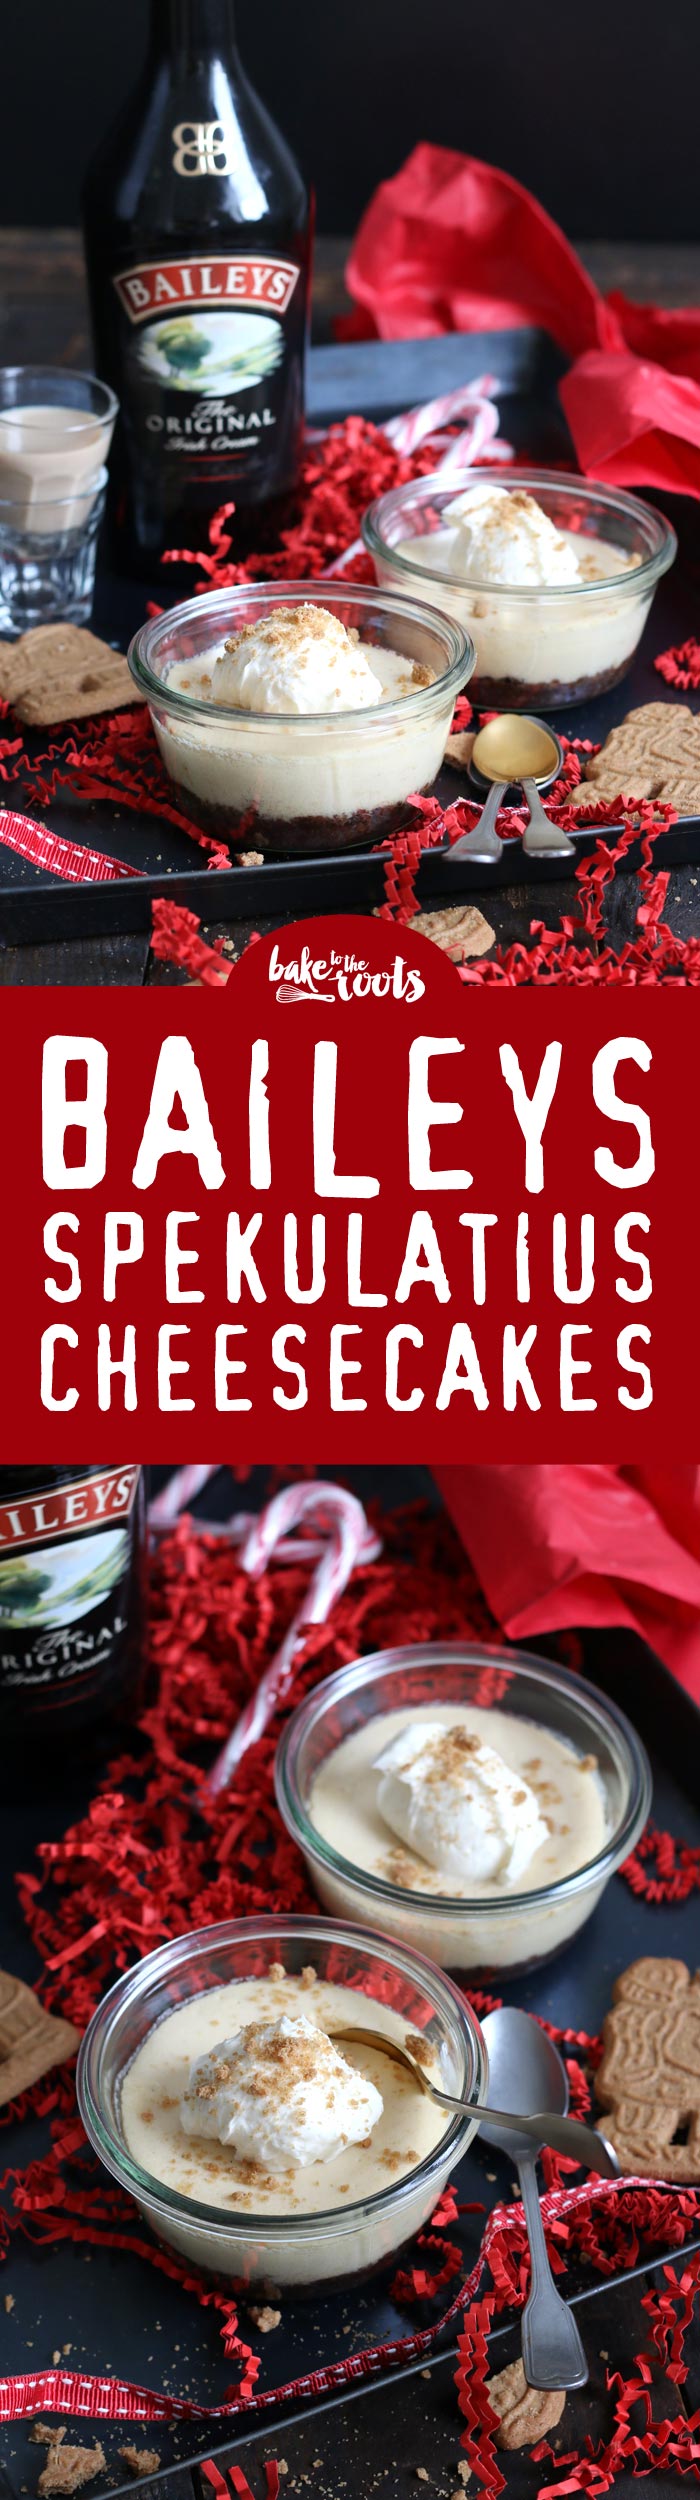 Leckere Käsekuchen im Glas gebacken: Spekulatius Cheesecake mit Baileys | Bake to the roots